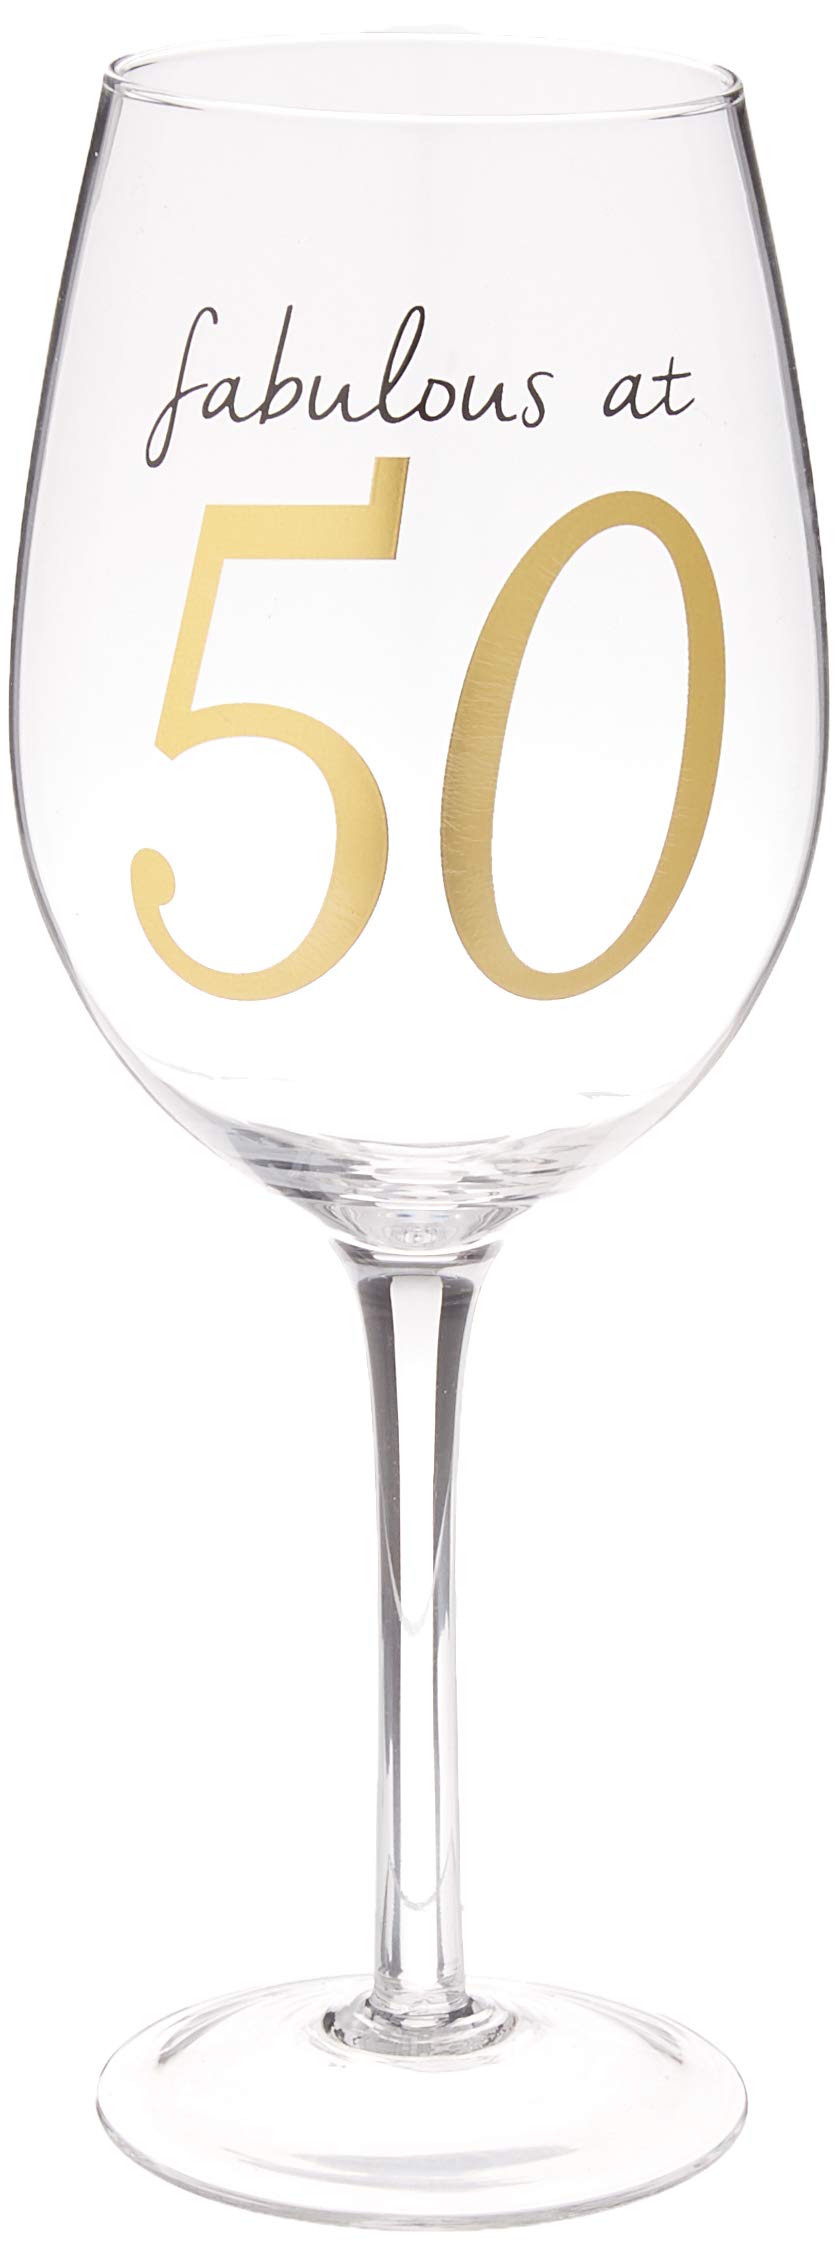 Fabulous at 50 Wine Glass